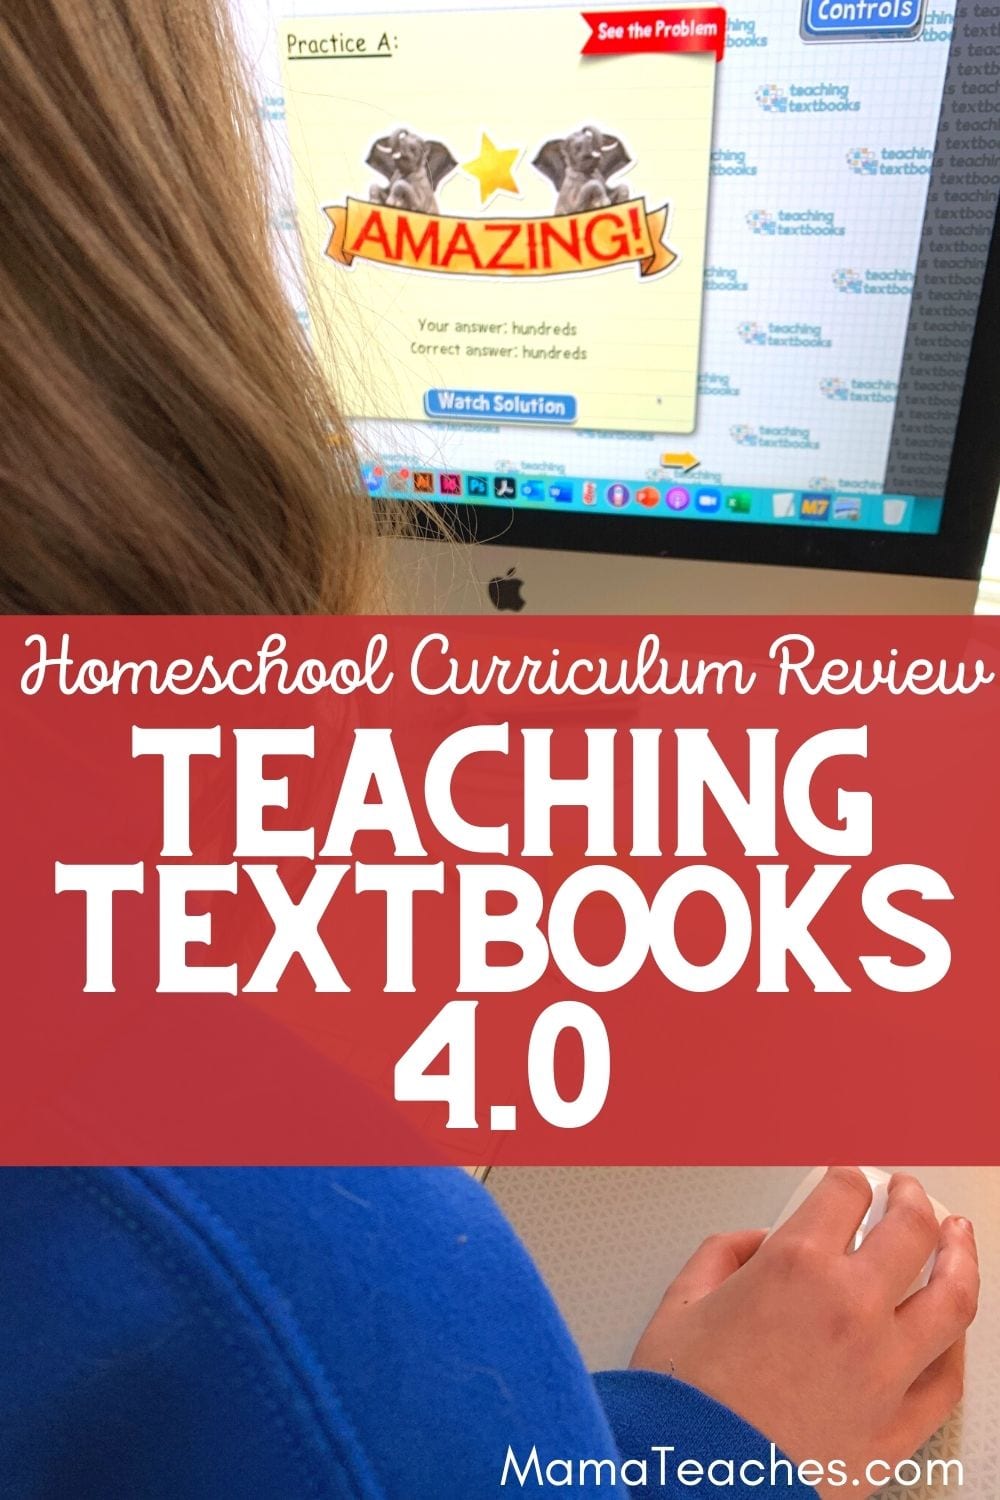 Homeschool Curriculum Review Teaching Textbooks 4.0